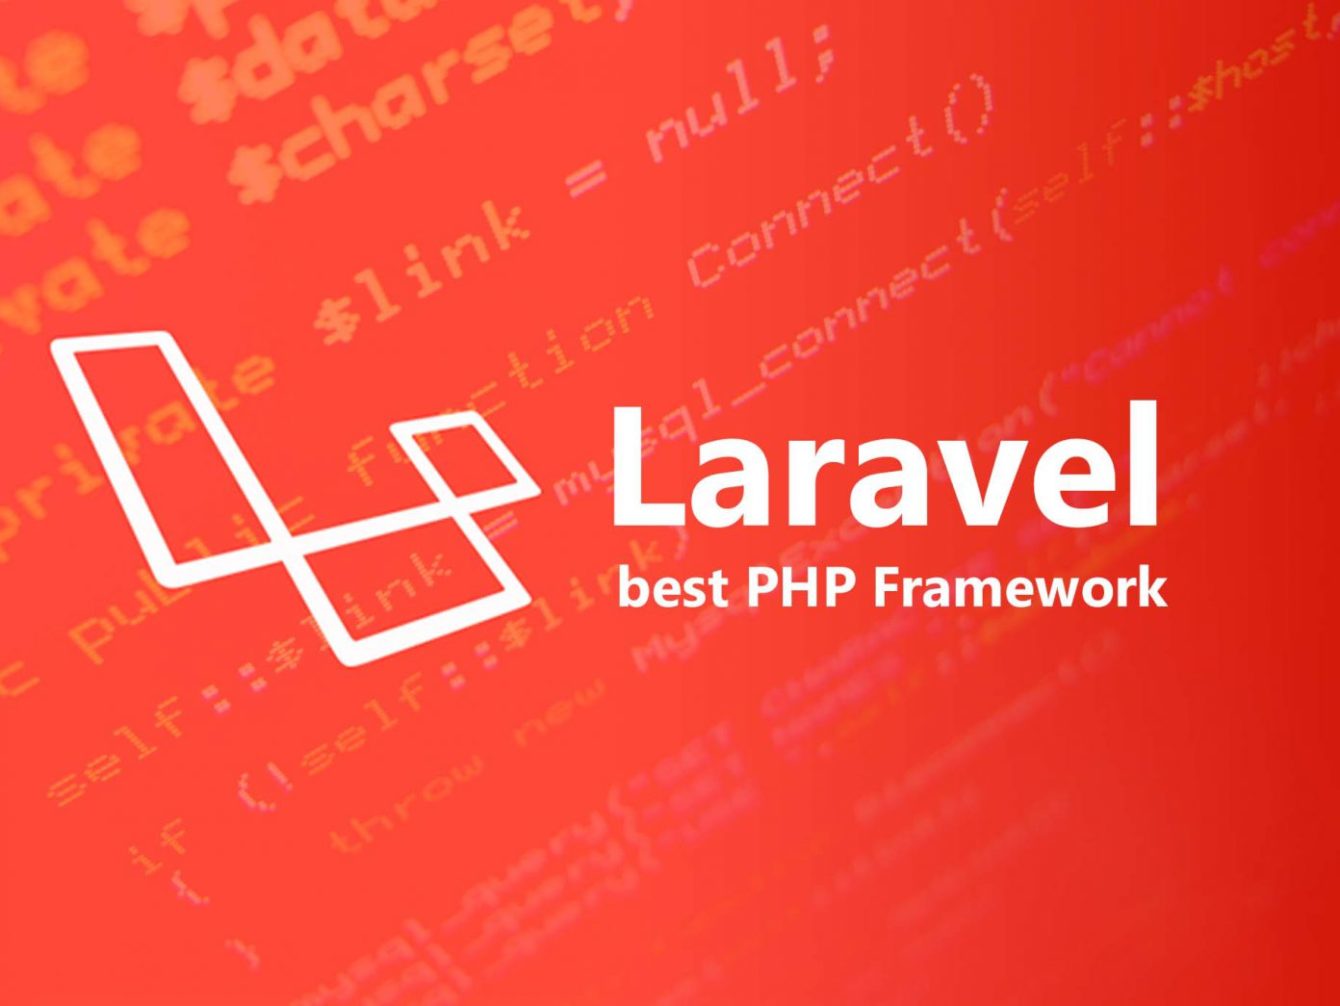 Best MVP Framework — Laravel PHP